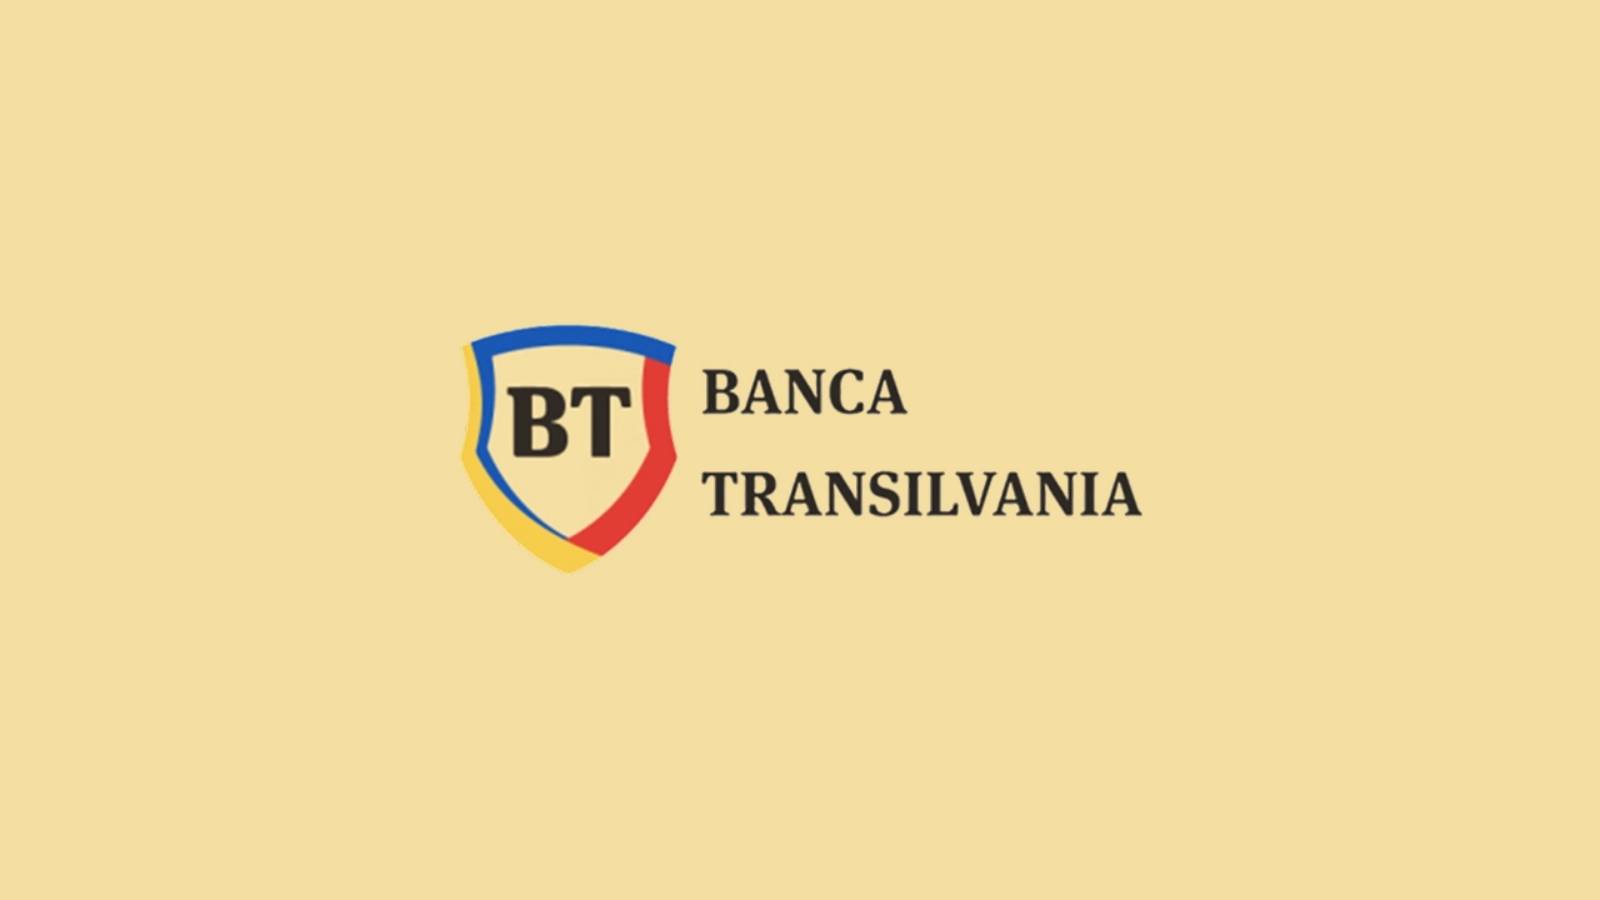 BANCA Transilvania Oficial AVVISO IMPORTANTE Misura speciale per i clienti rumeni